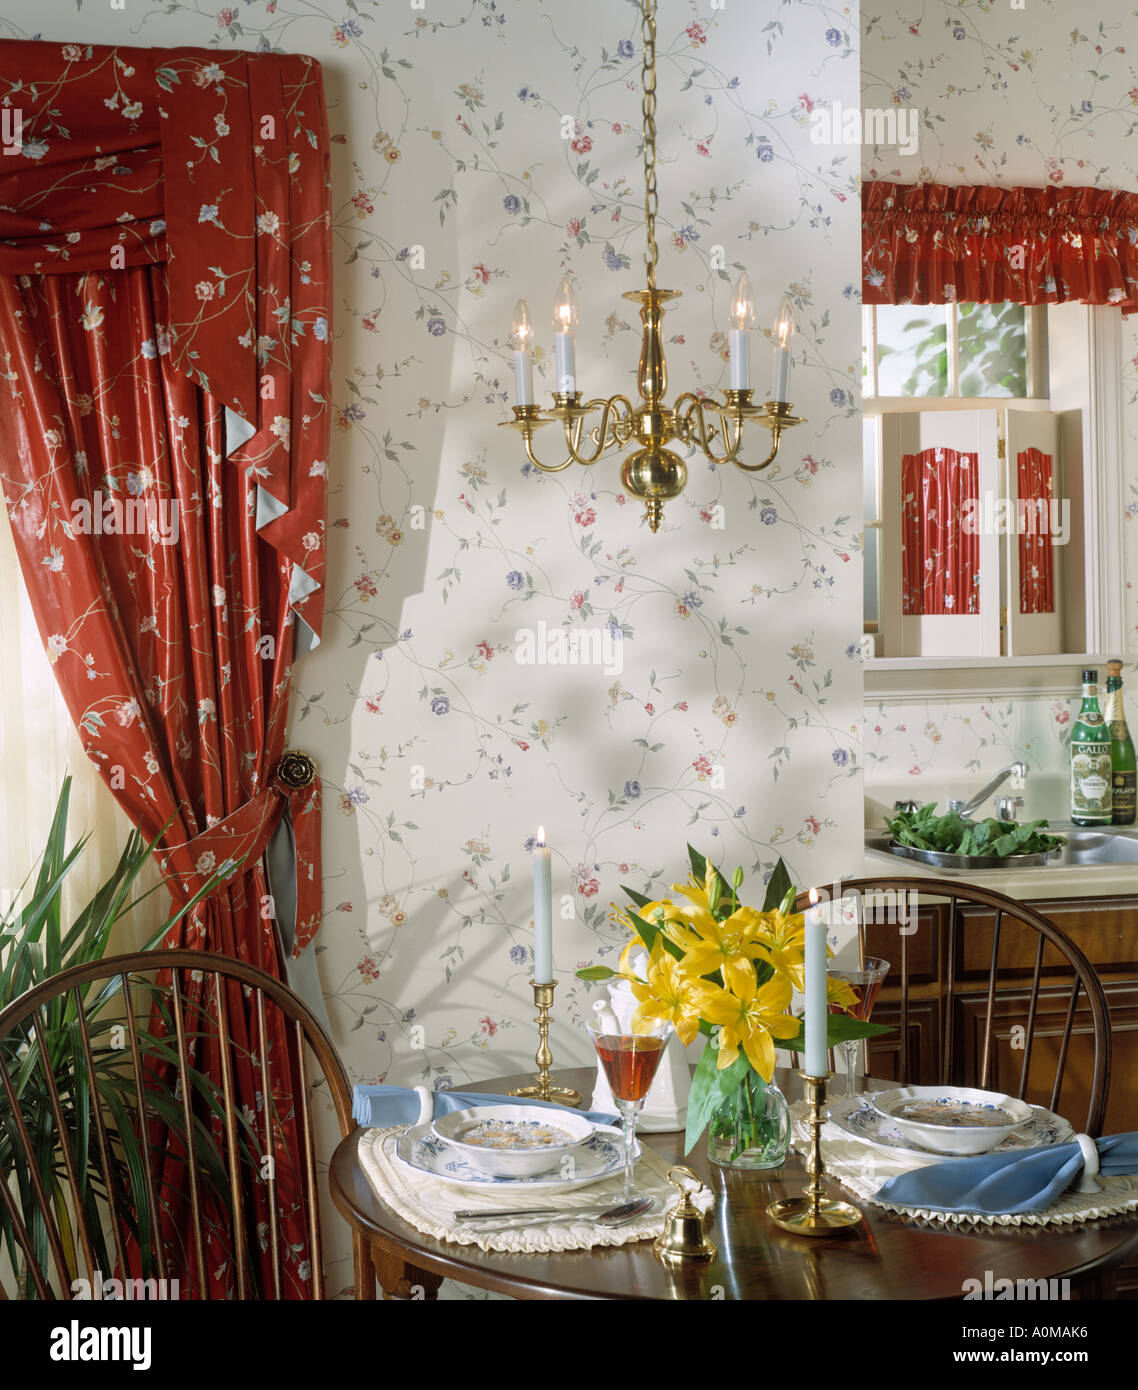 innen Tapete Küche Esszimmer Esszimmer Küche informellen Rahmen sitzt  Kerzen Gardinen Stockfotografie - Alamy